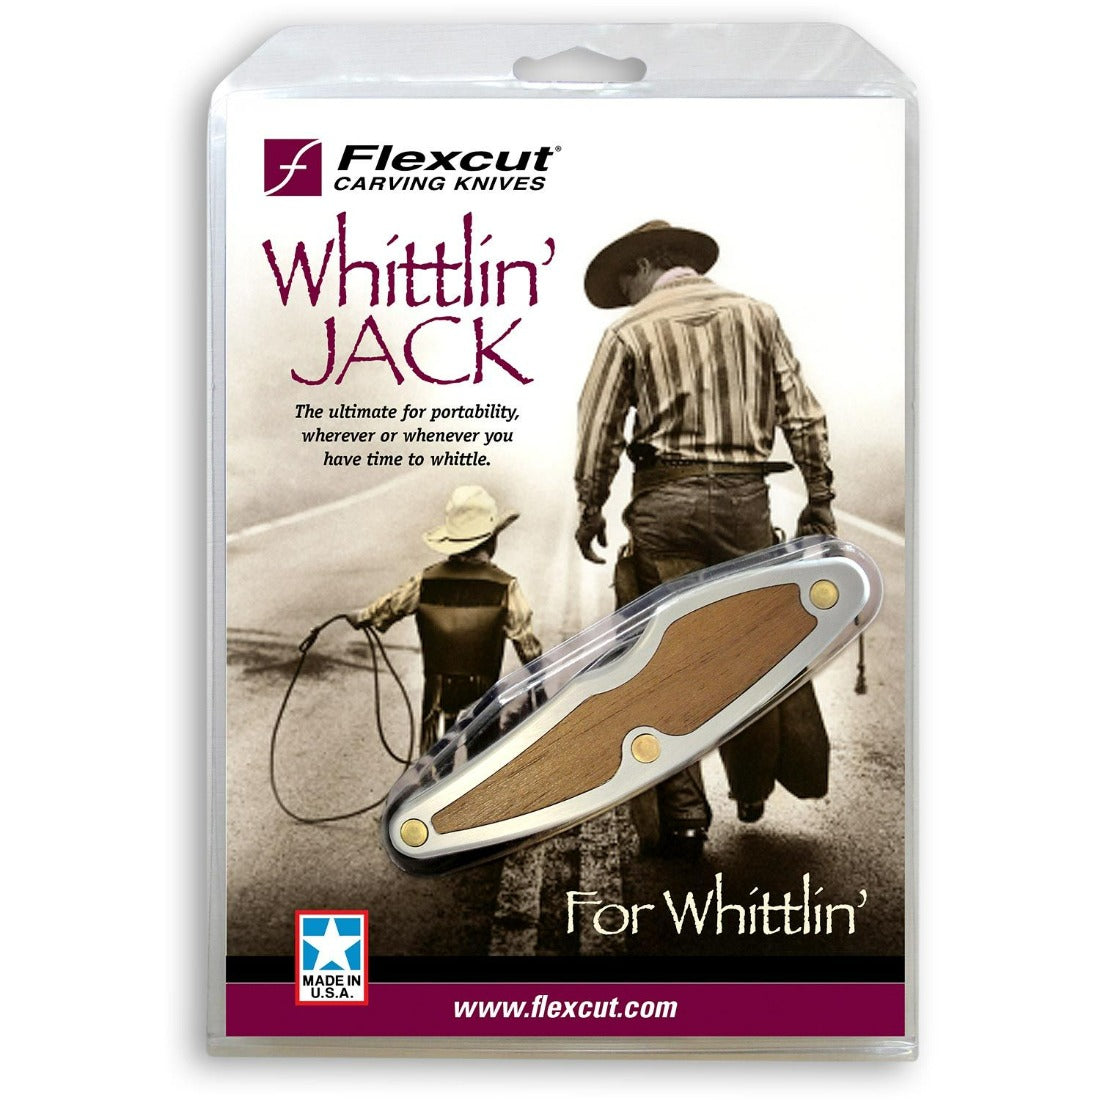 Flexcut Whittlin' Jack JKN88 shown in it's retail packaging